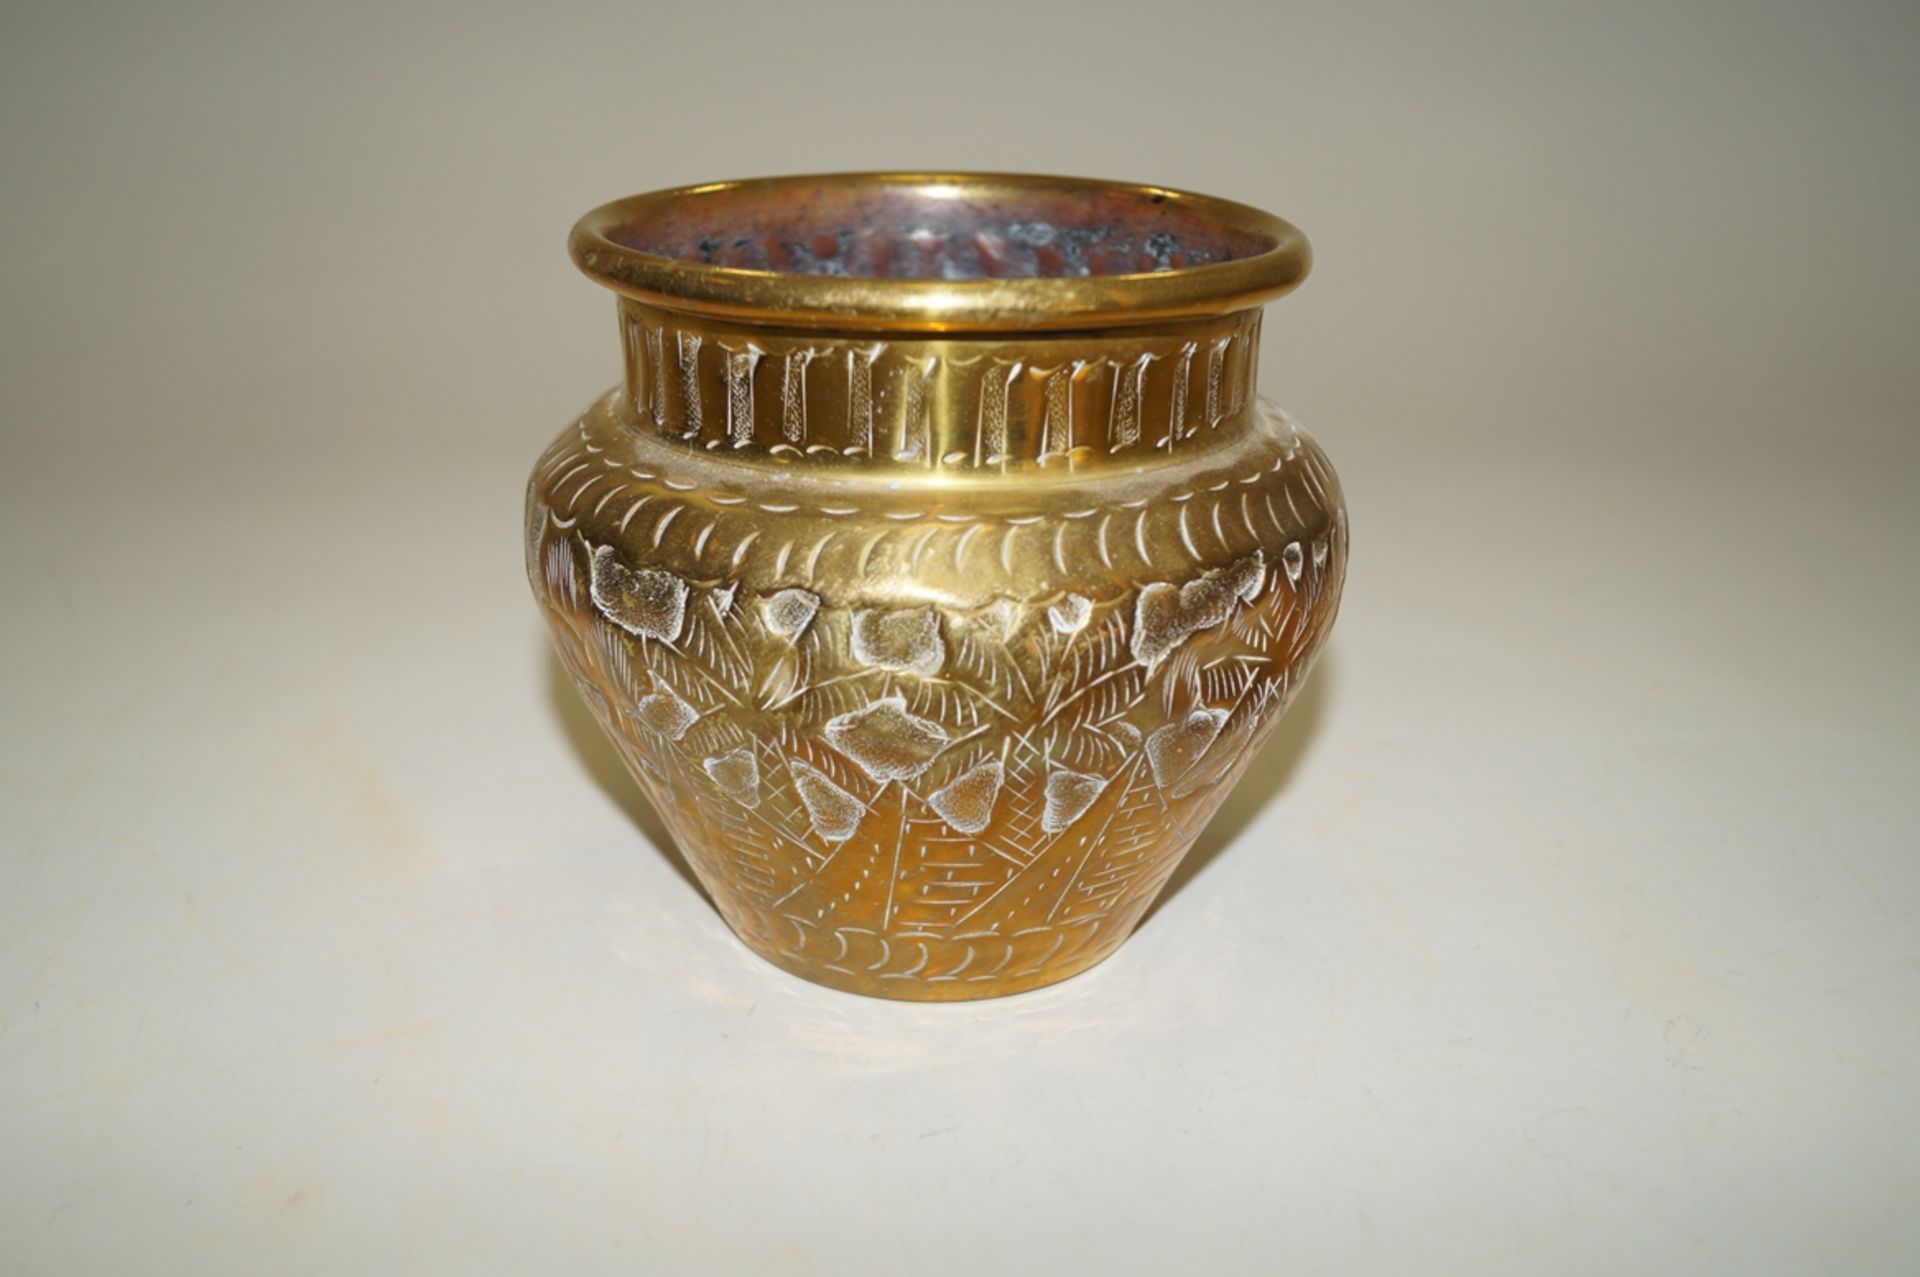 Kleine Vase aus goldfarbenem Messing; umlaufend florale Ornamentik und weitere Verzierungen; Gebrau - Image 2 of 2